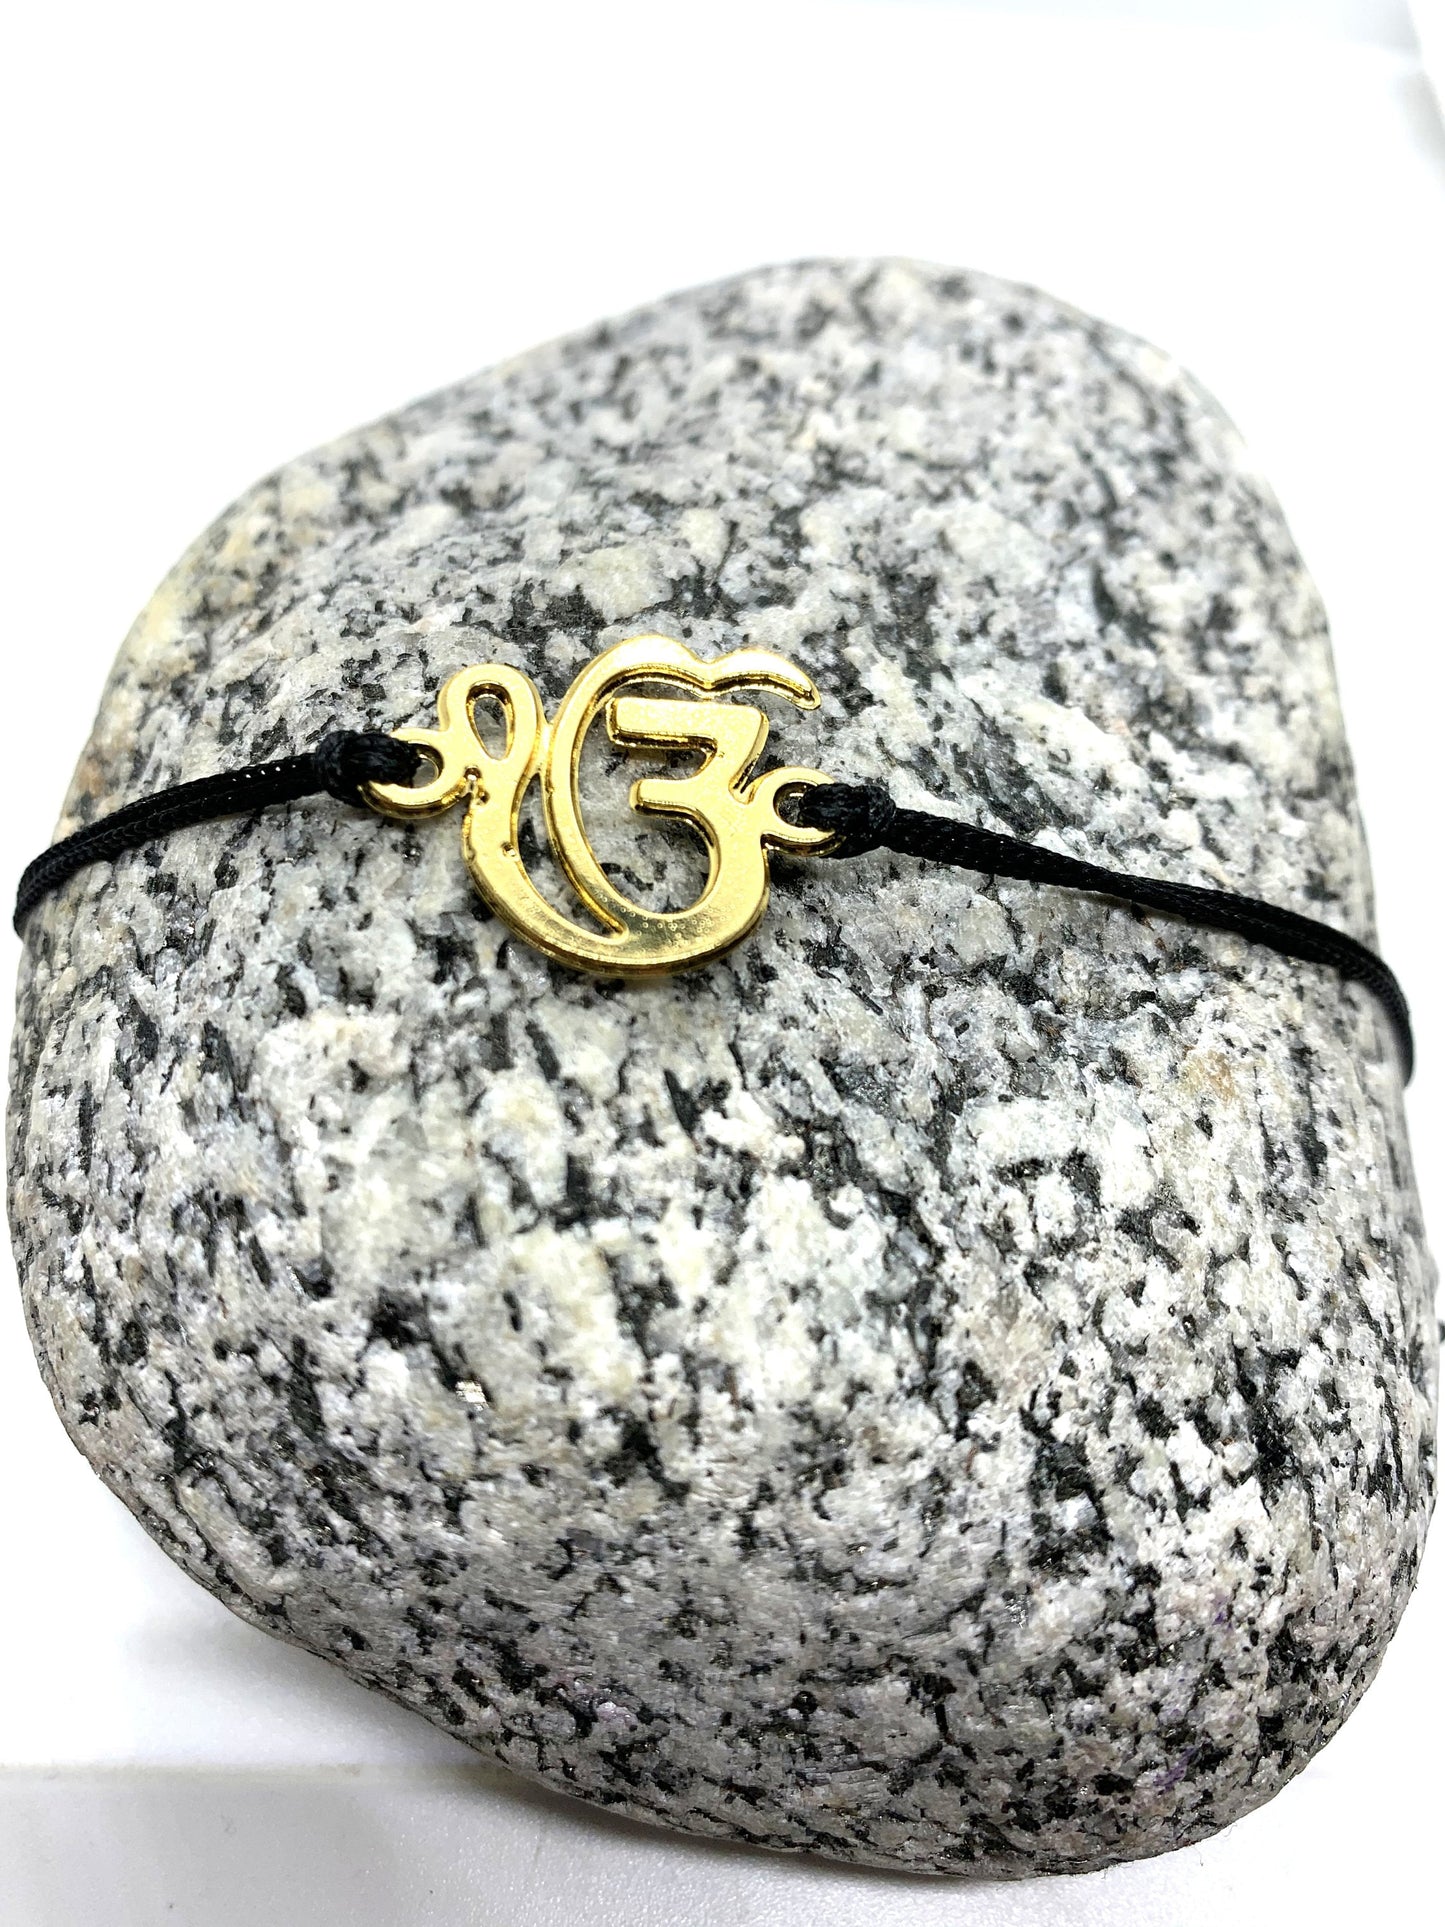 Ek Omkar bracelet, Sikh bracelet, Wahe Guru Bracelet, Meditation, Yoga inspired Jewellery, Adjustable bracelet, IK OMKAR bracelet, Gift